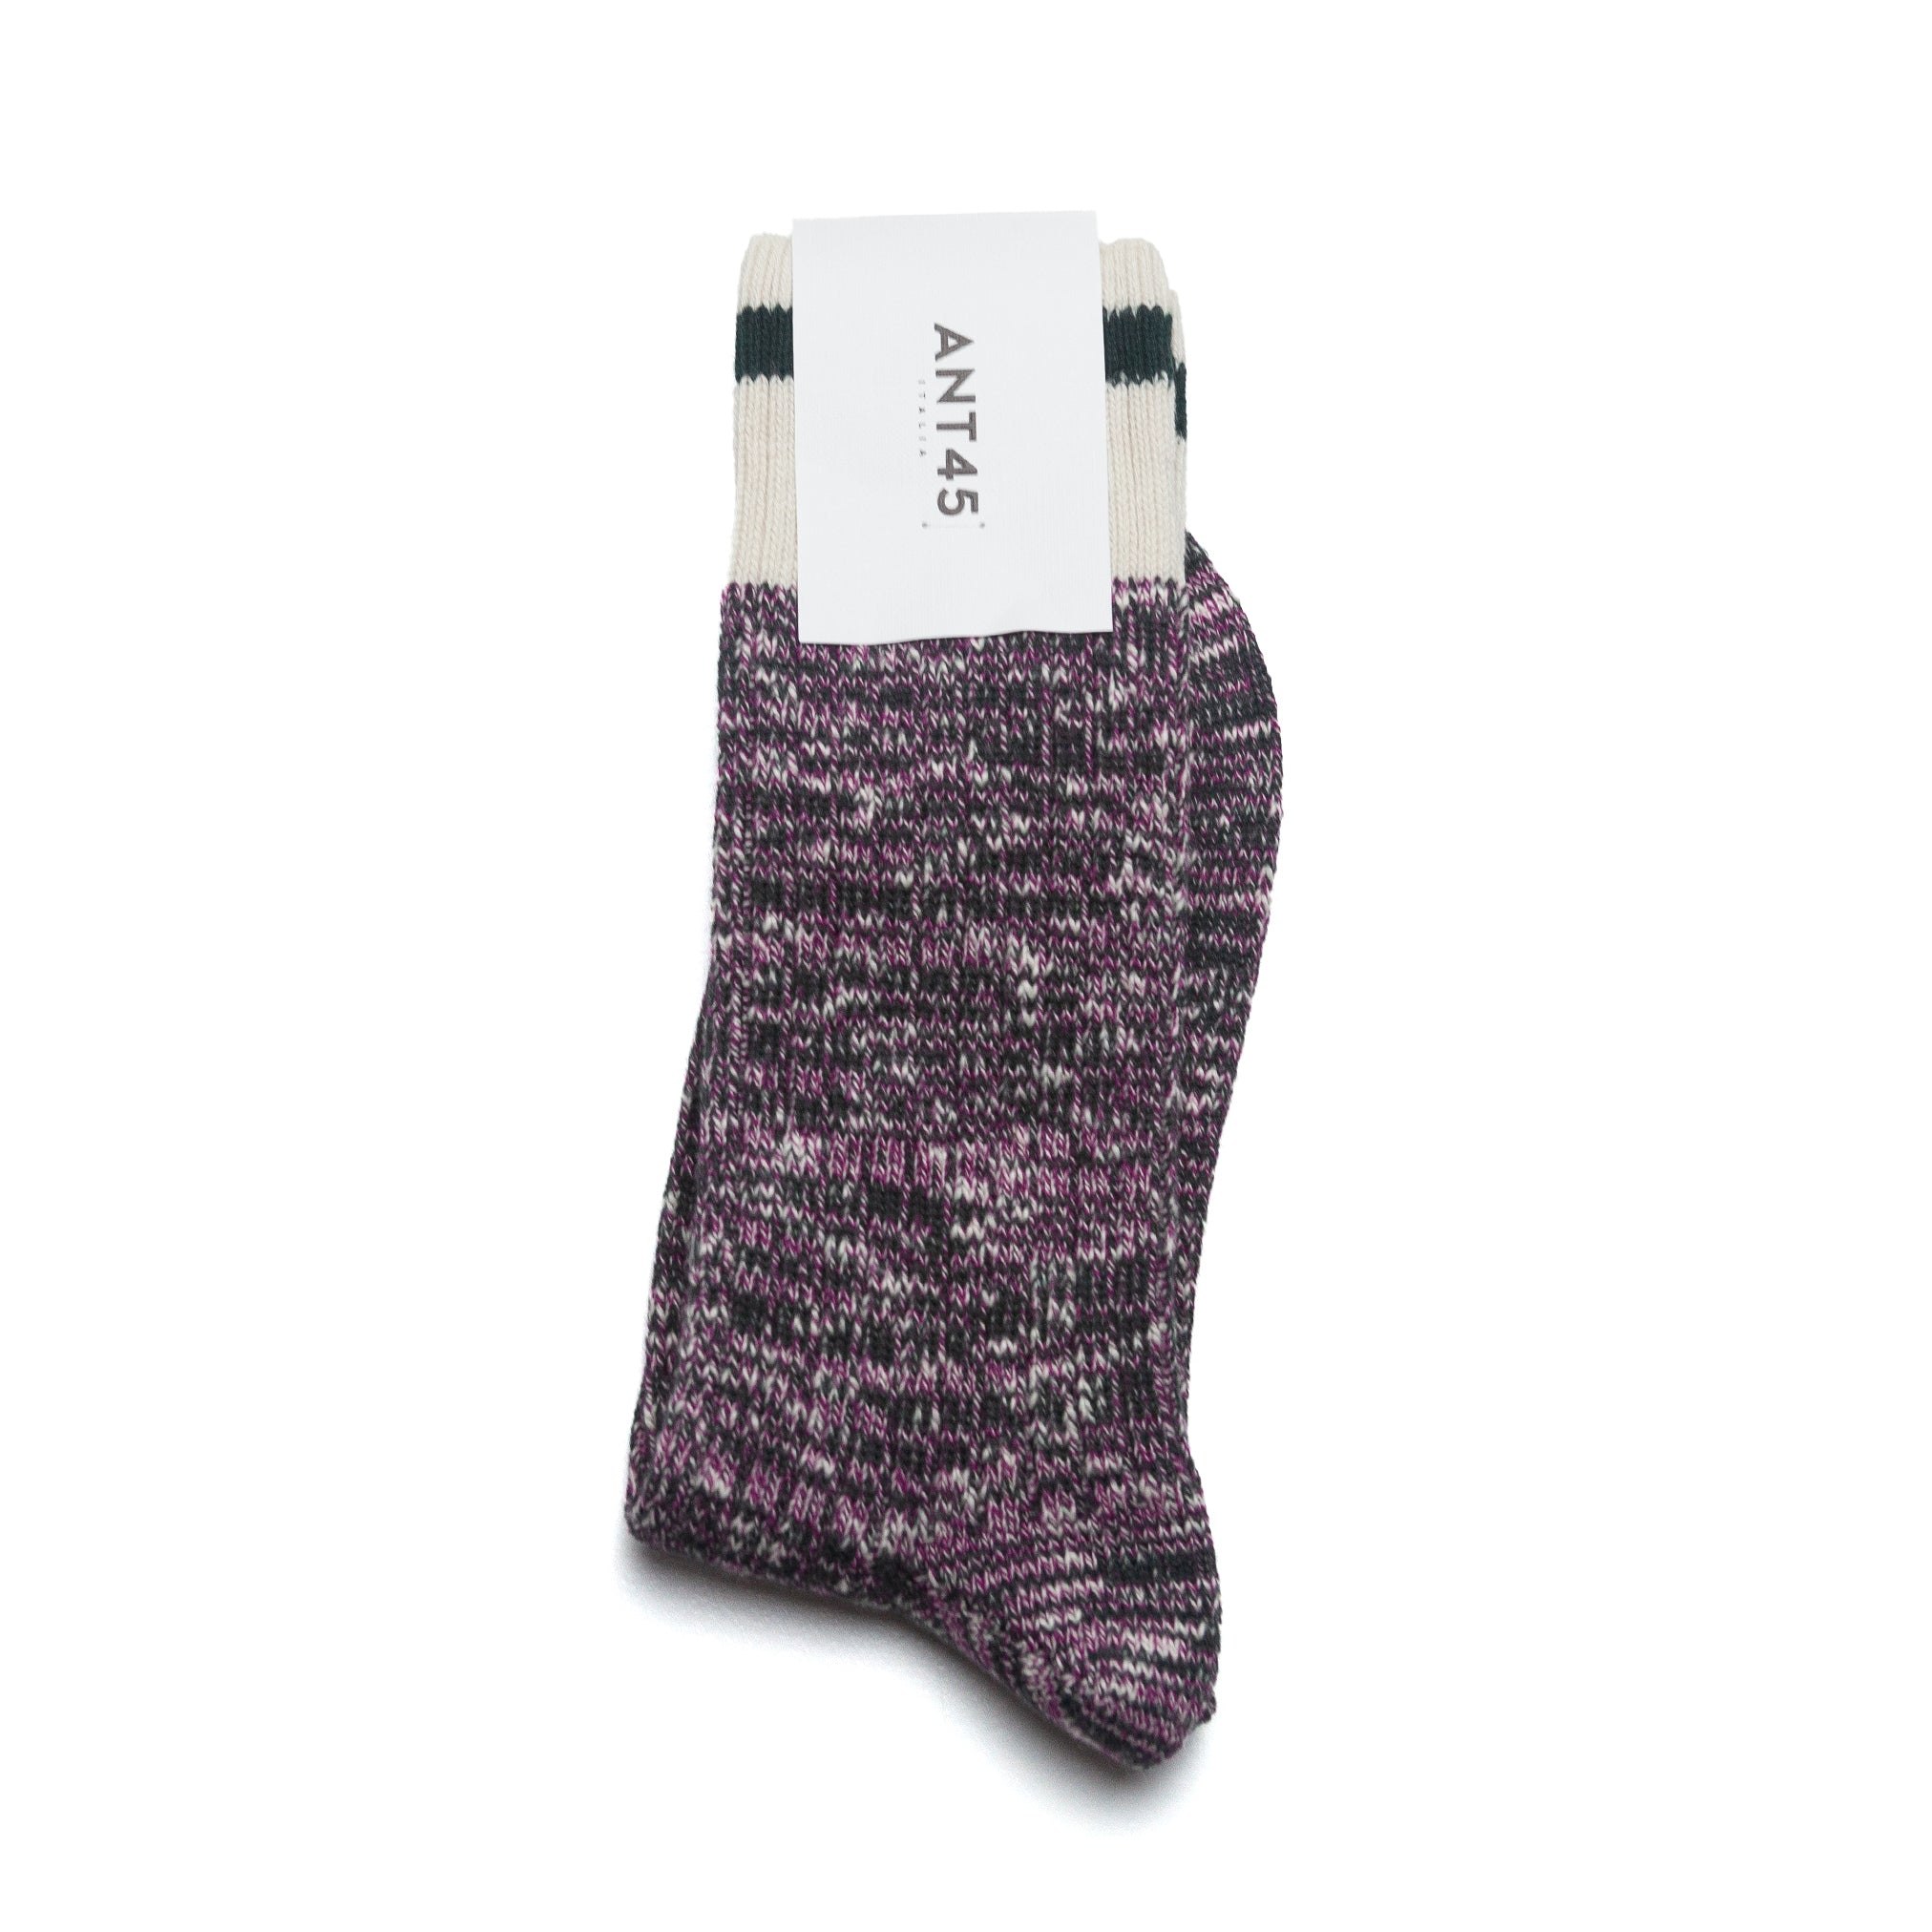 Firenze Sock in Marled Purple